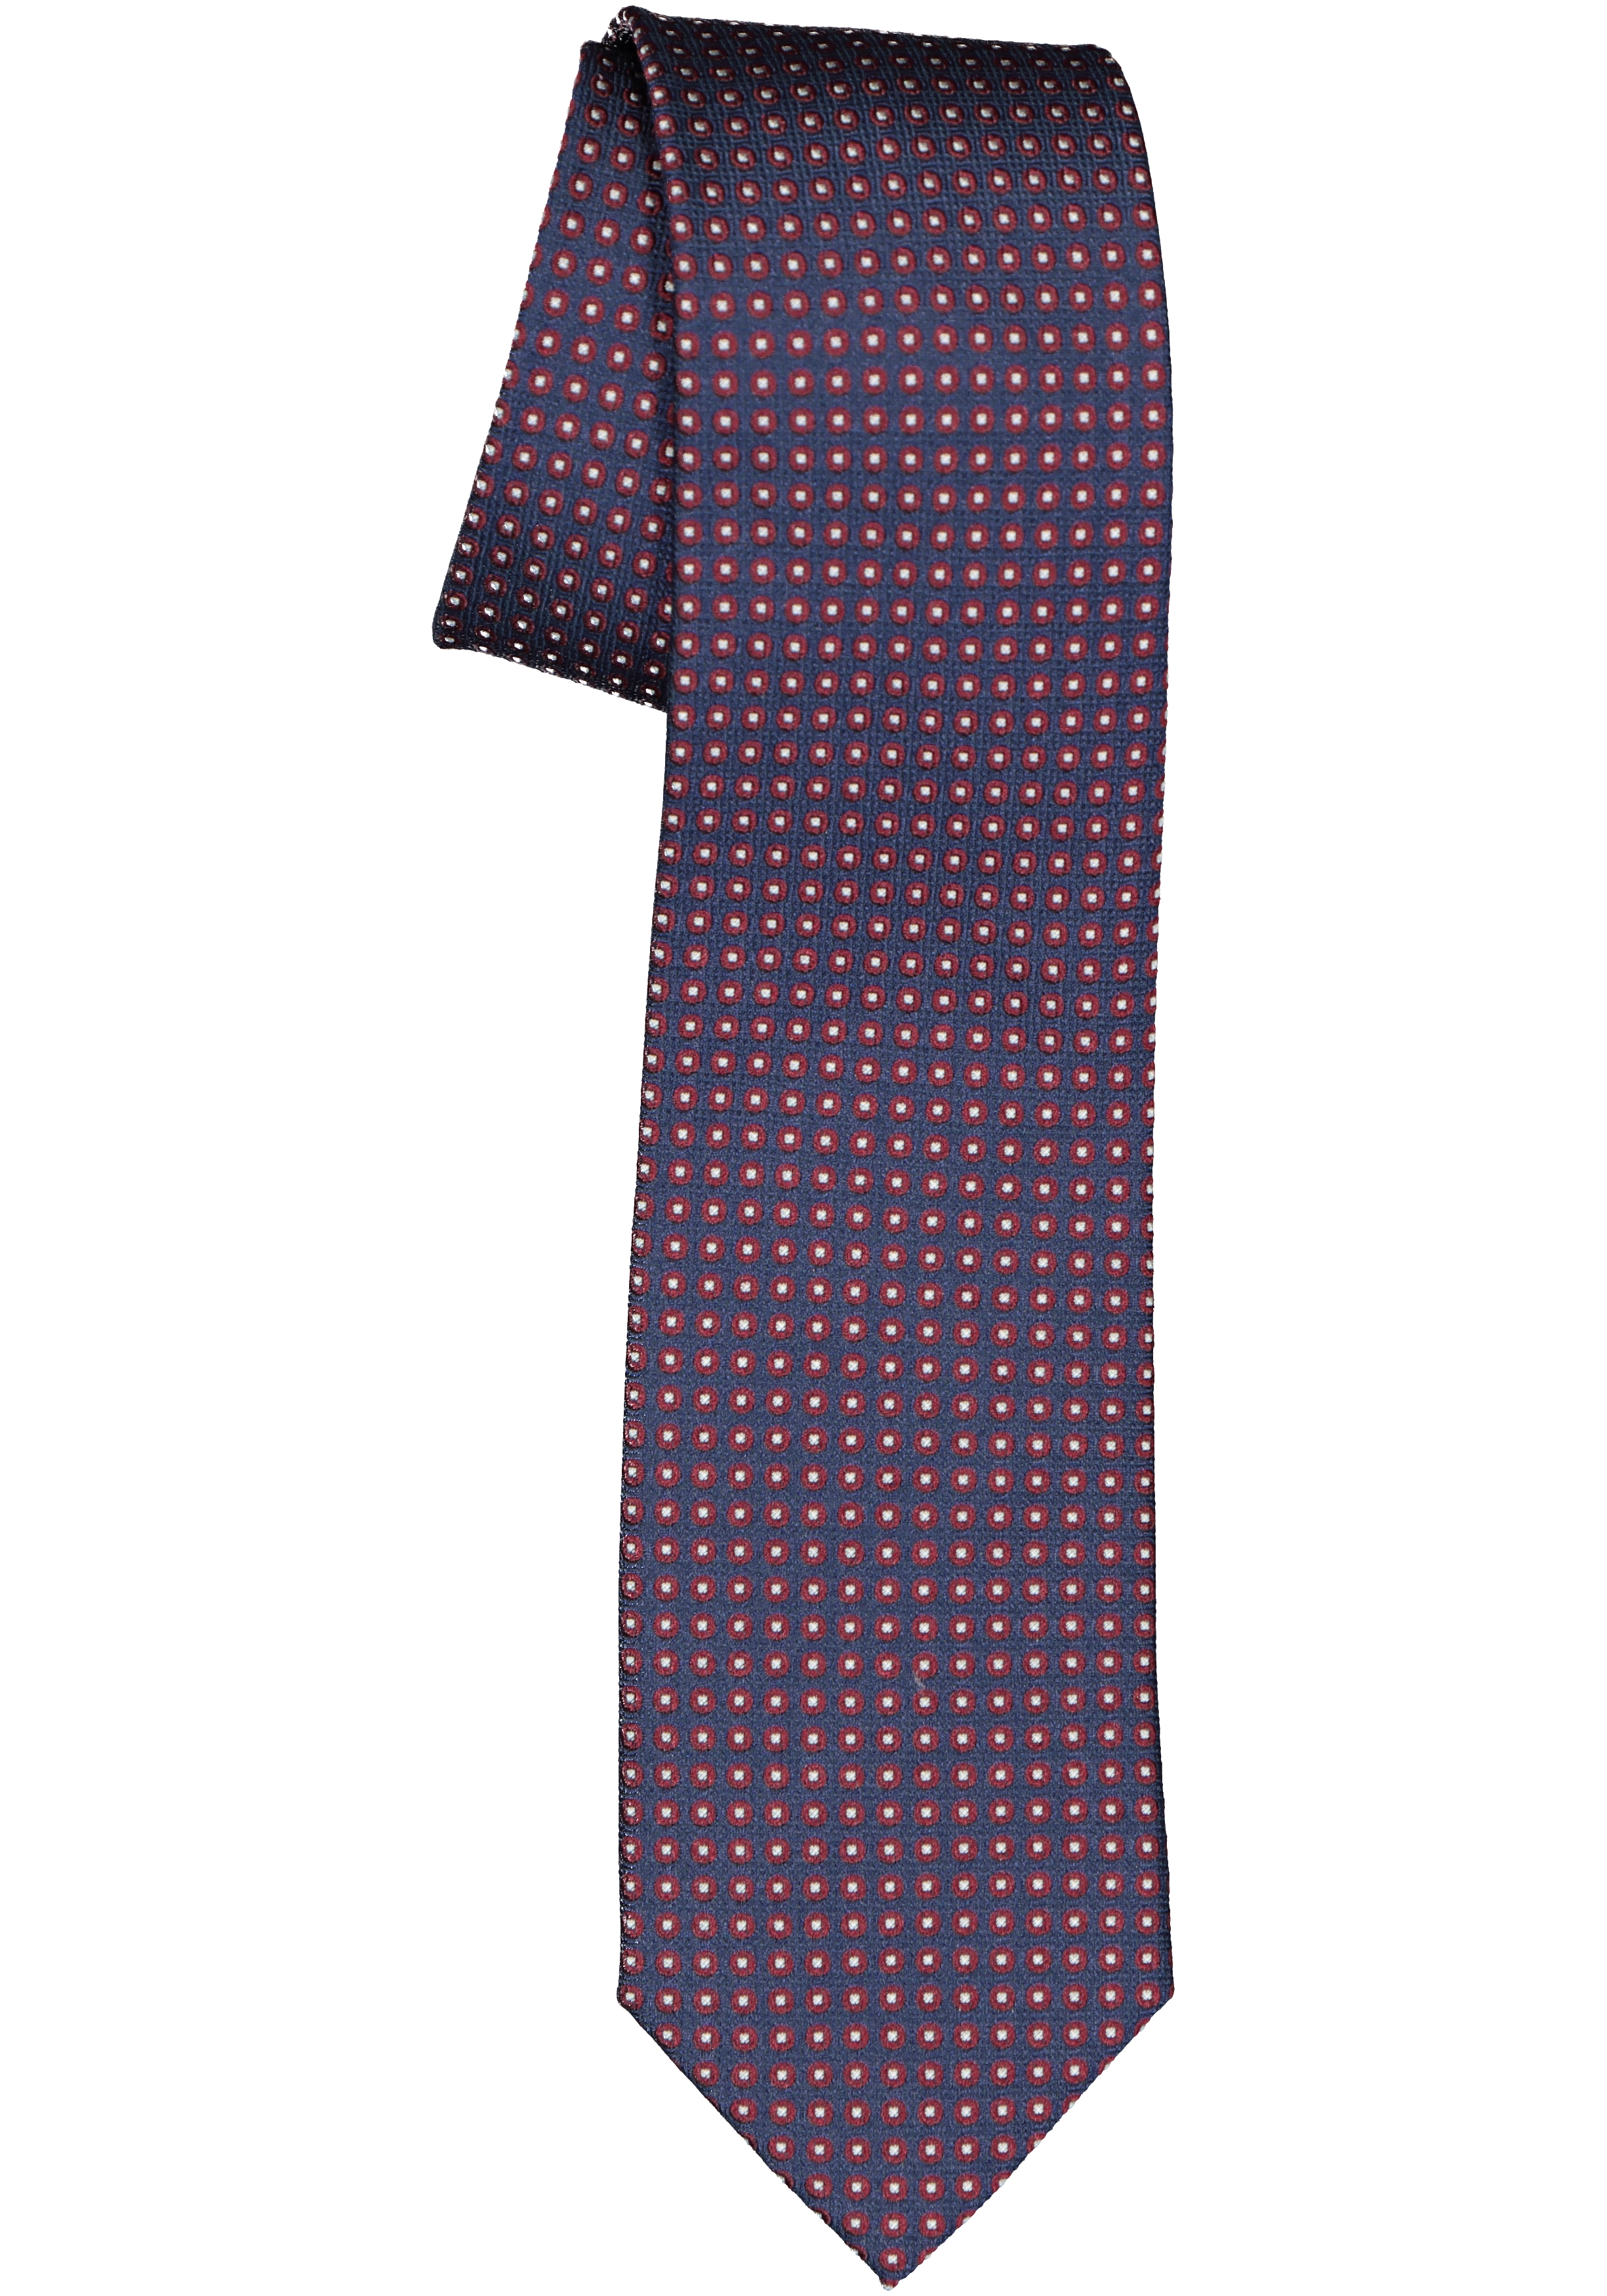 Michaelis  stropdas, zijde, blauw met bordeaux rood en wit dessin